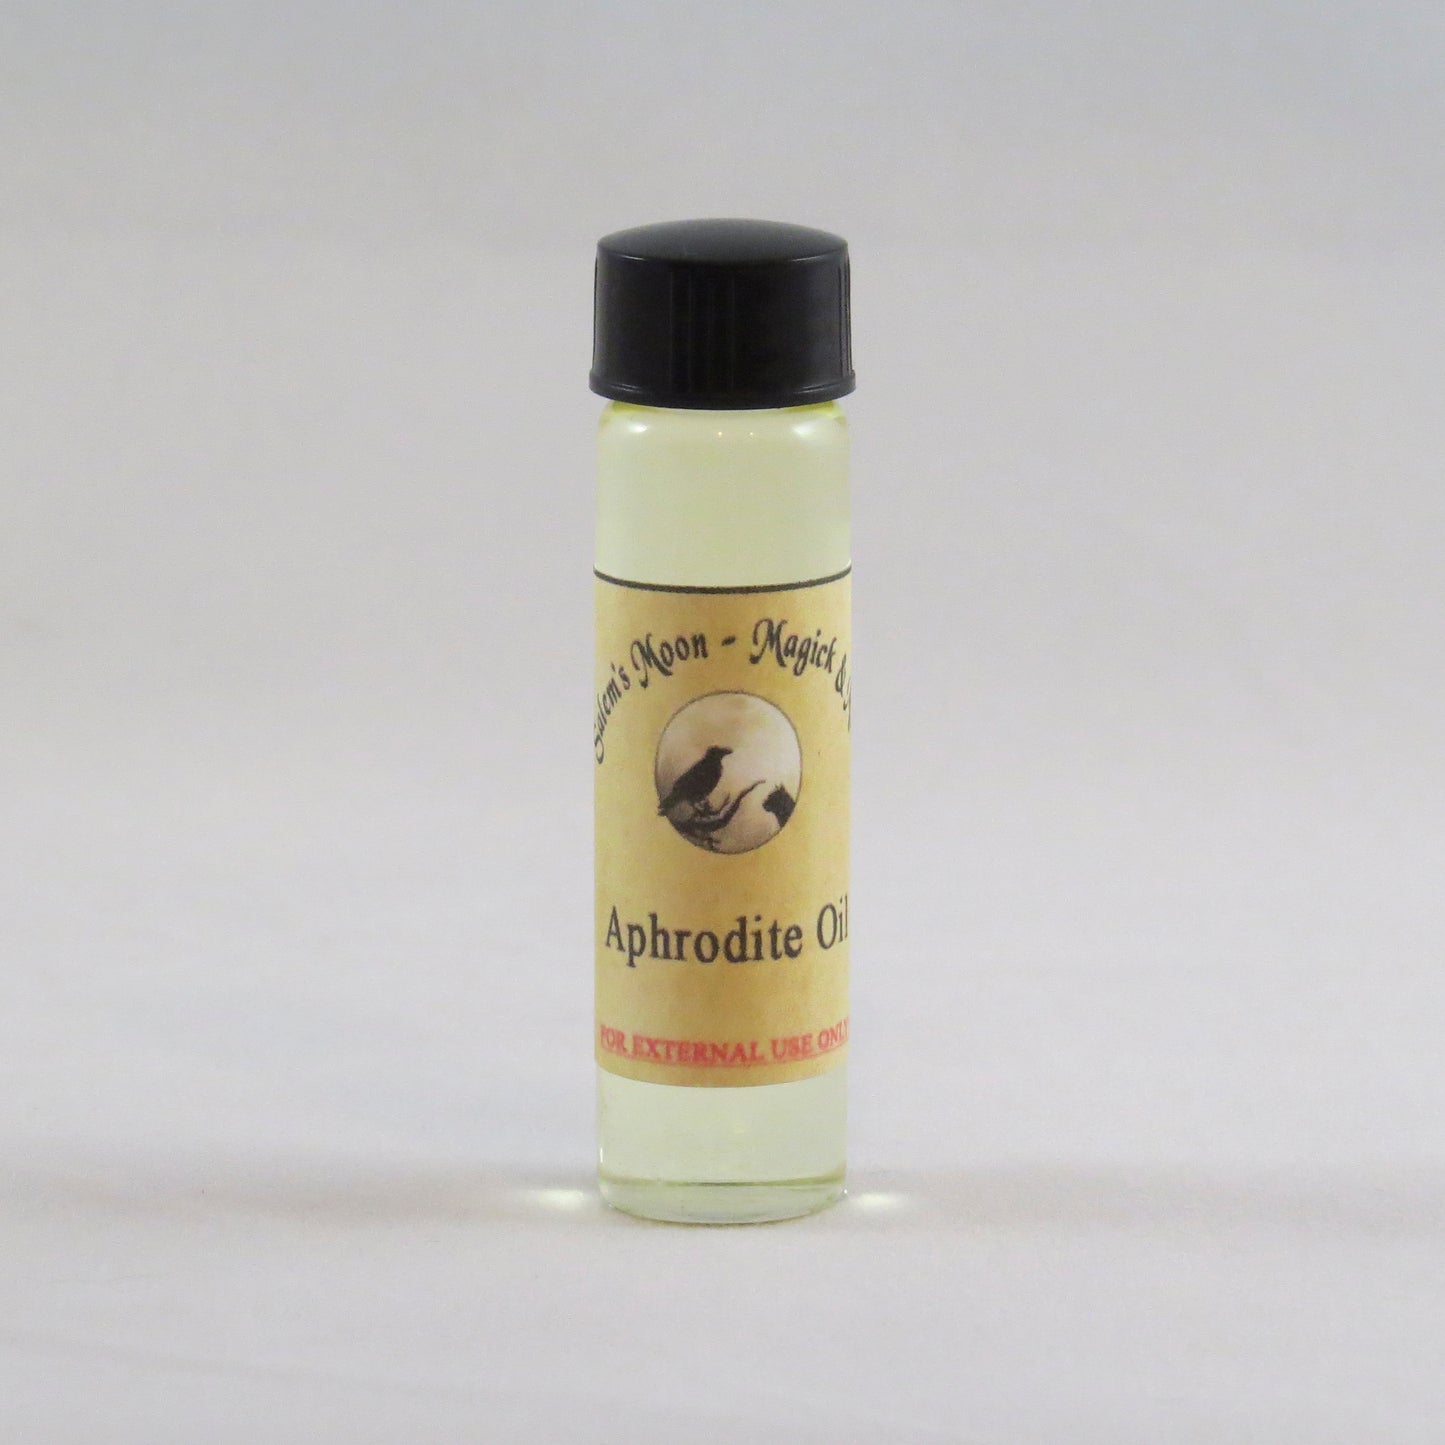 Aphrodite Oil